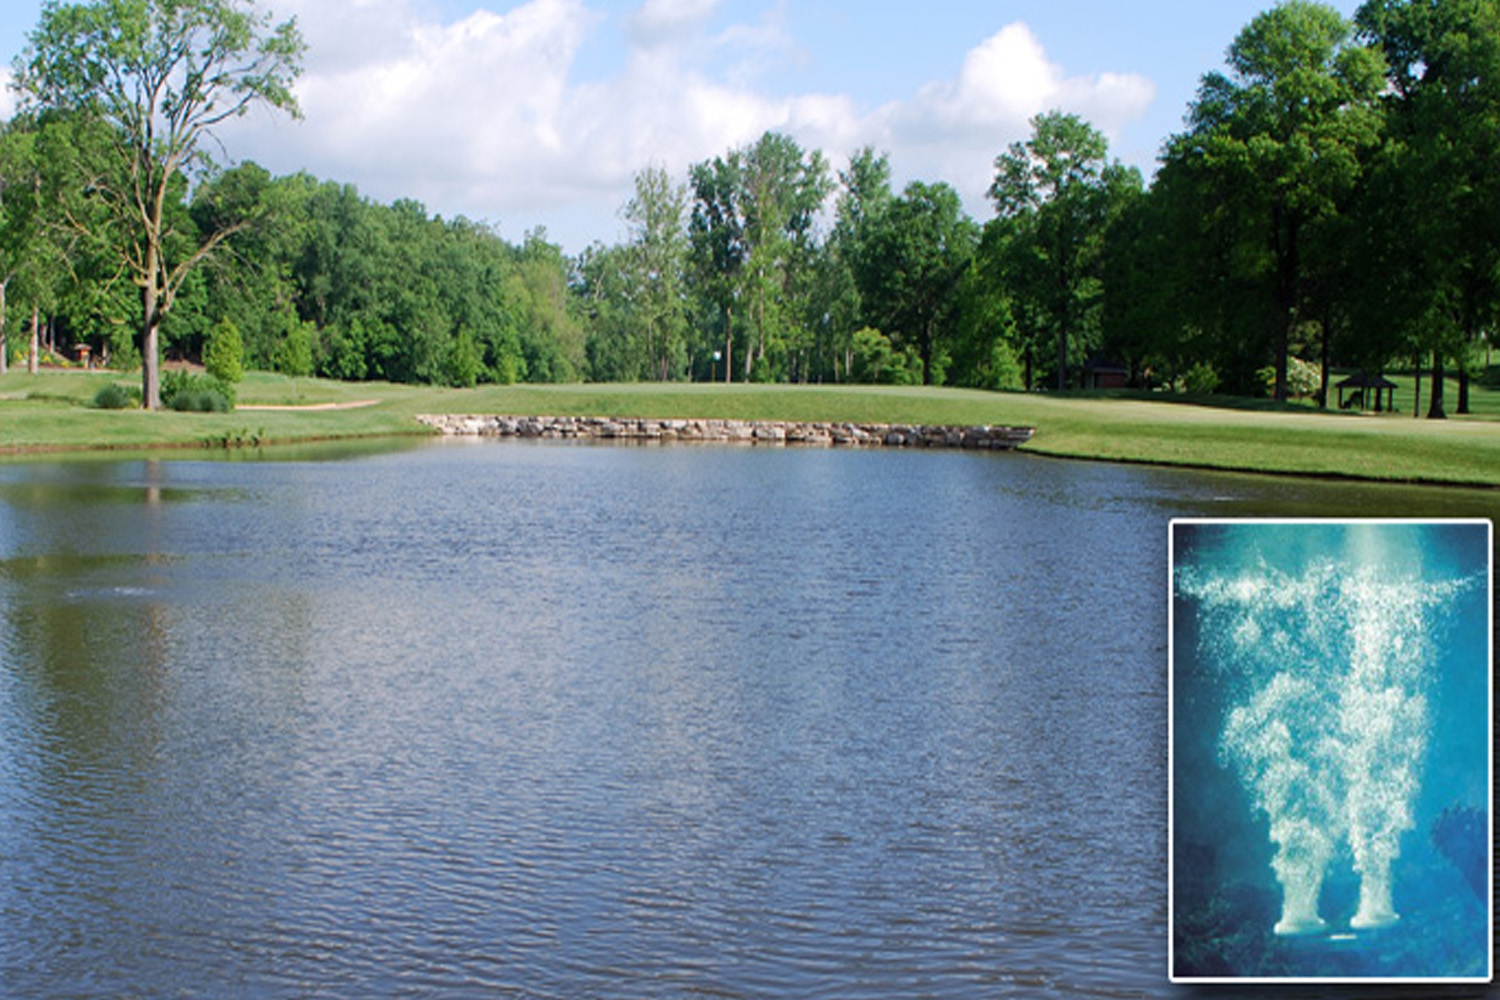 Otterbine aerator in golf pond